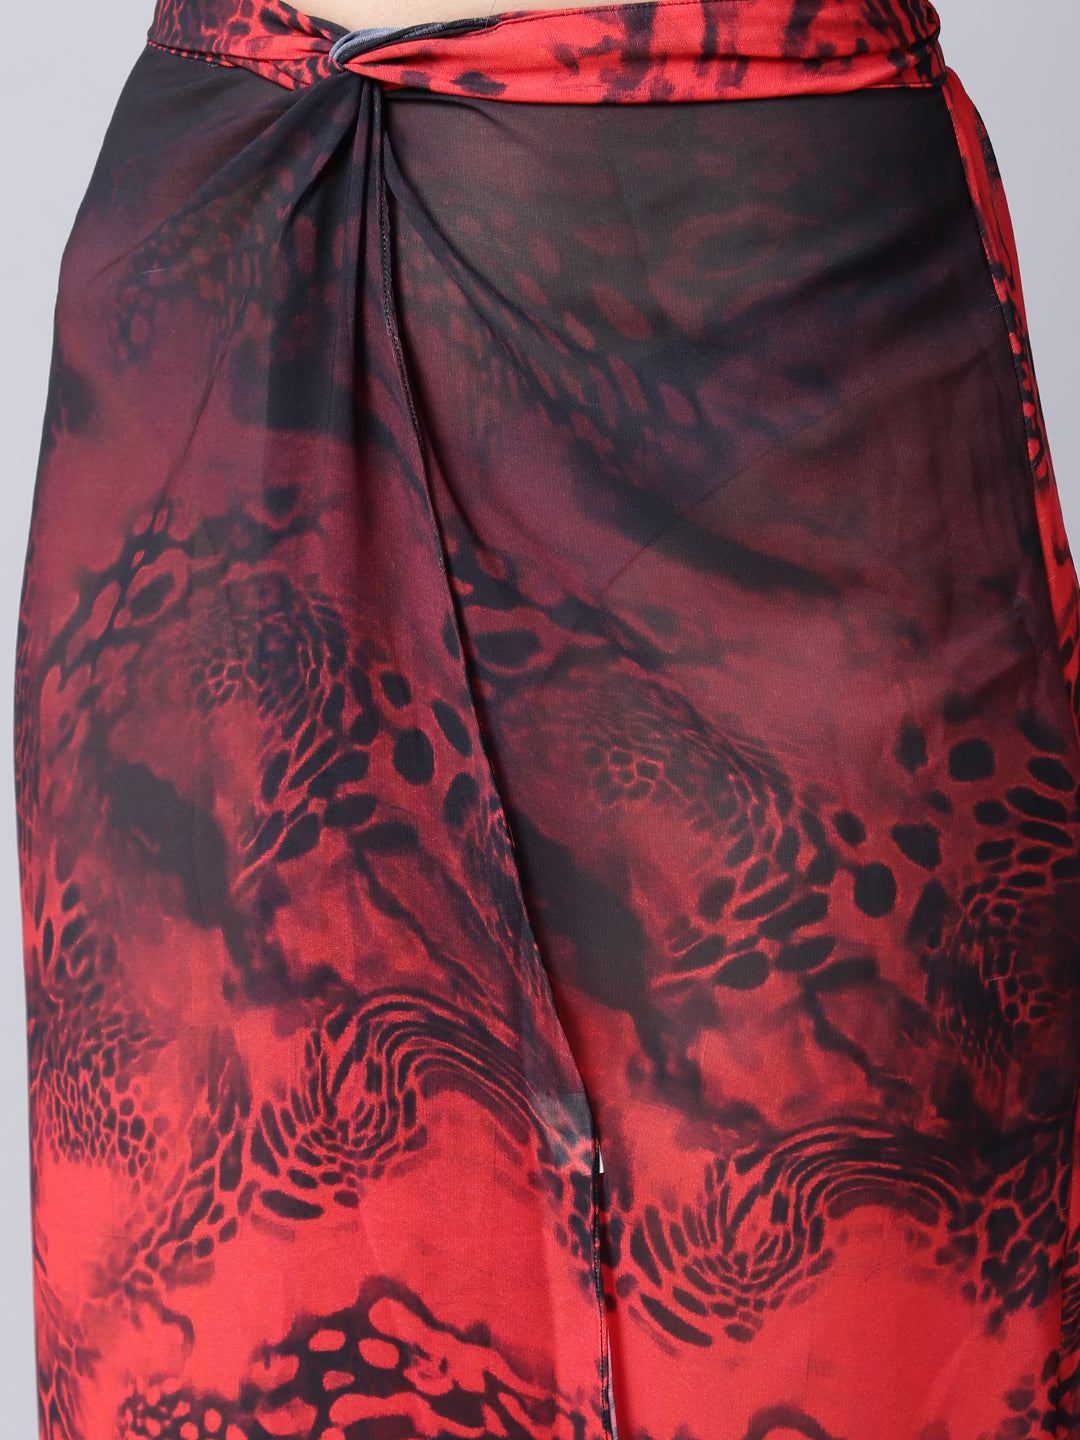 Melange Beachwear Cover-up Skirt